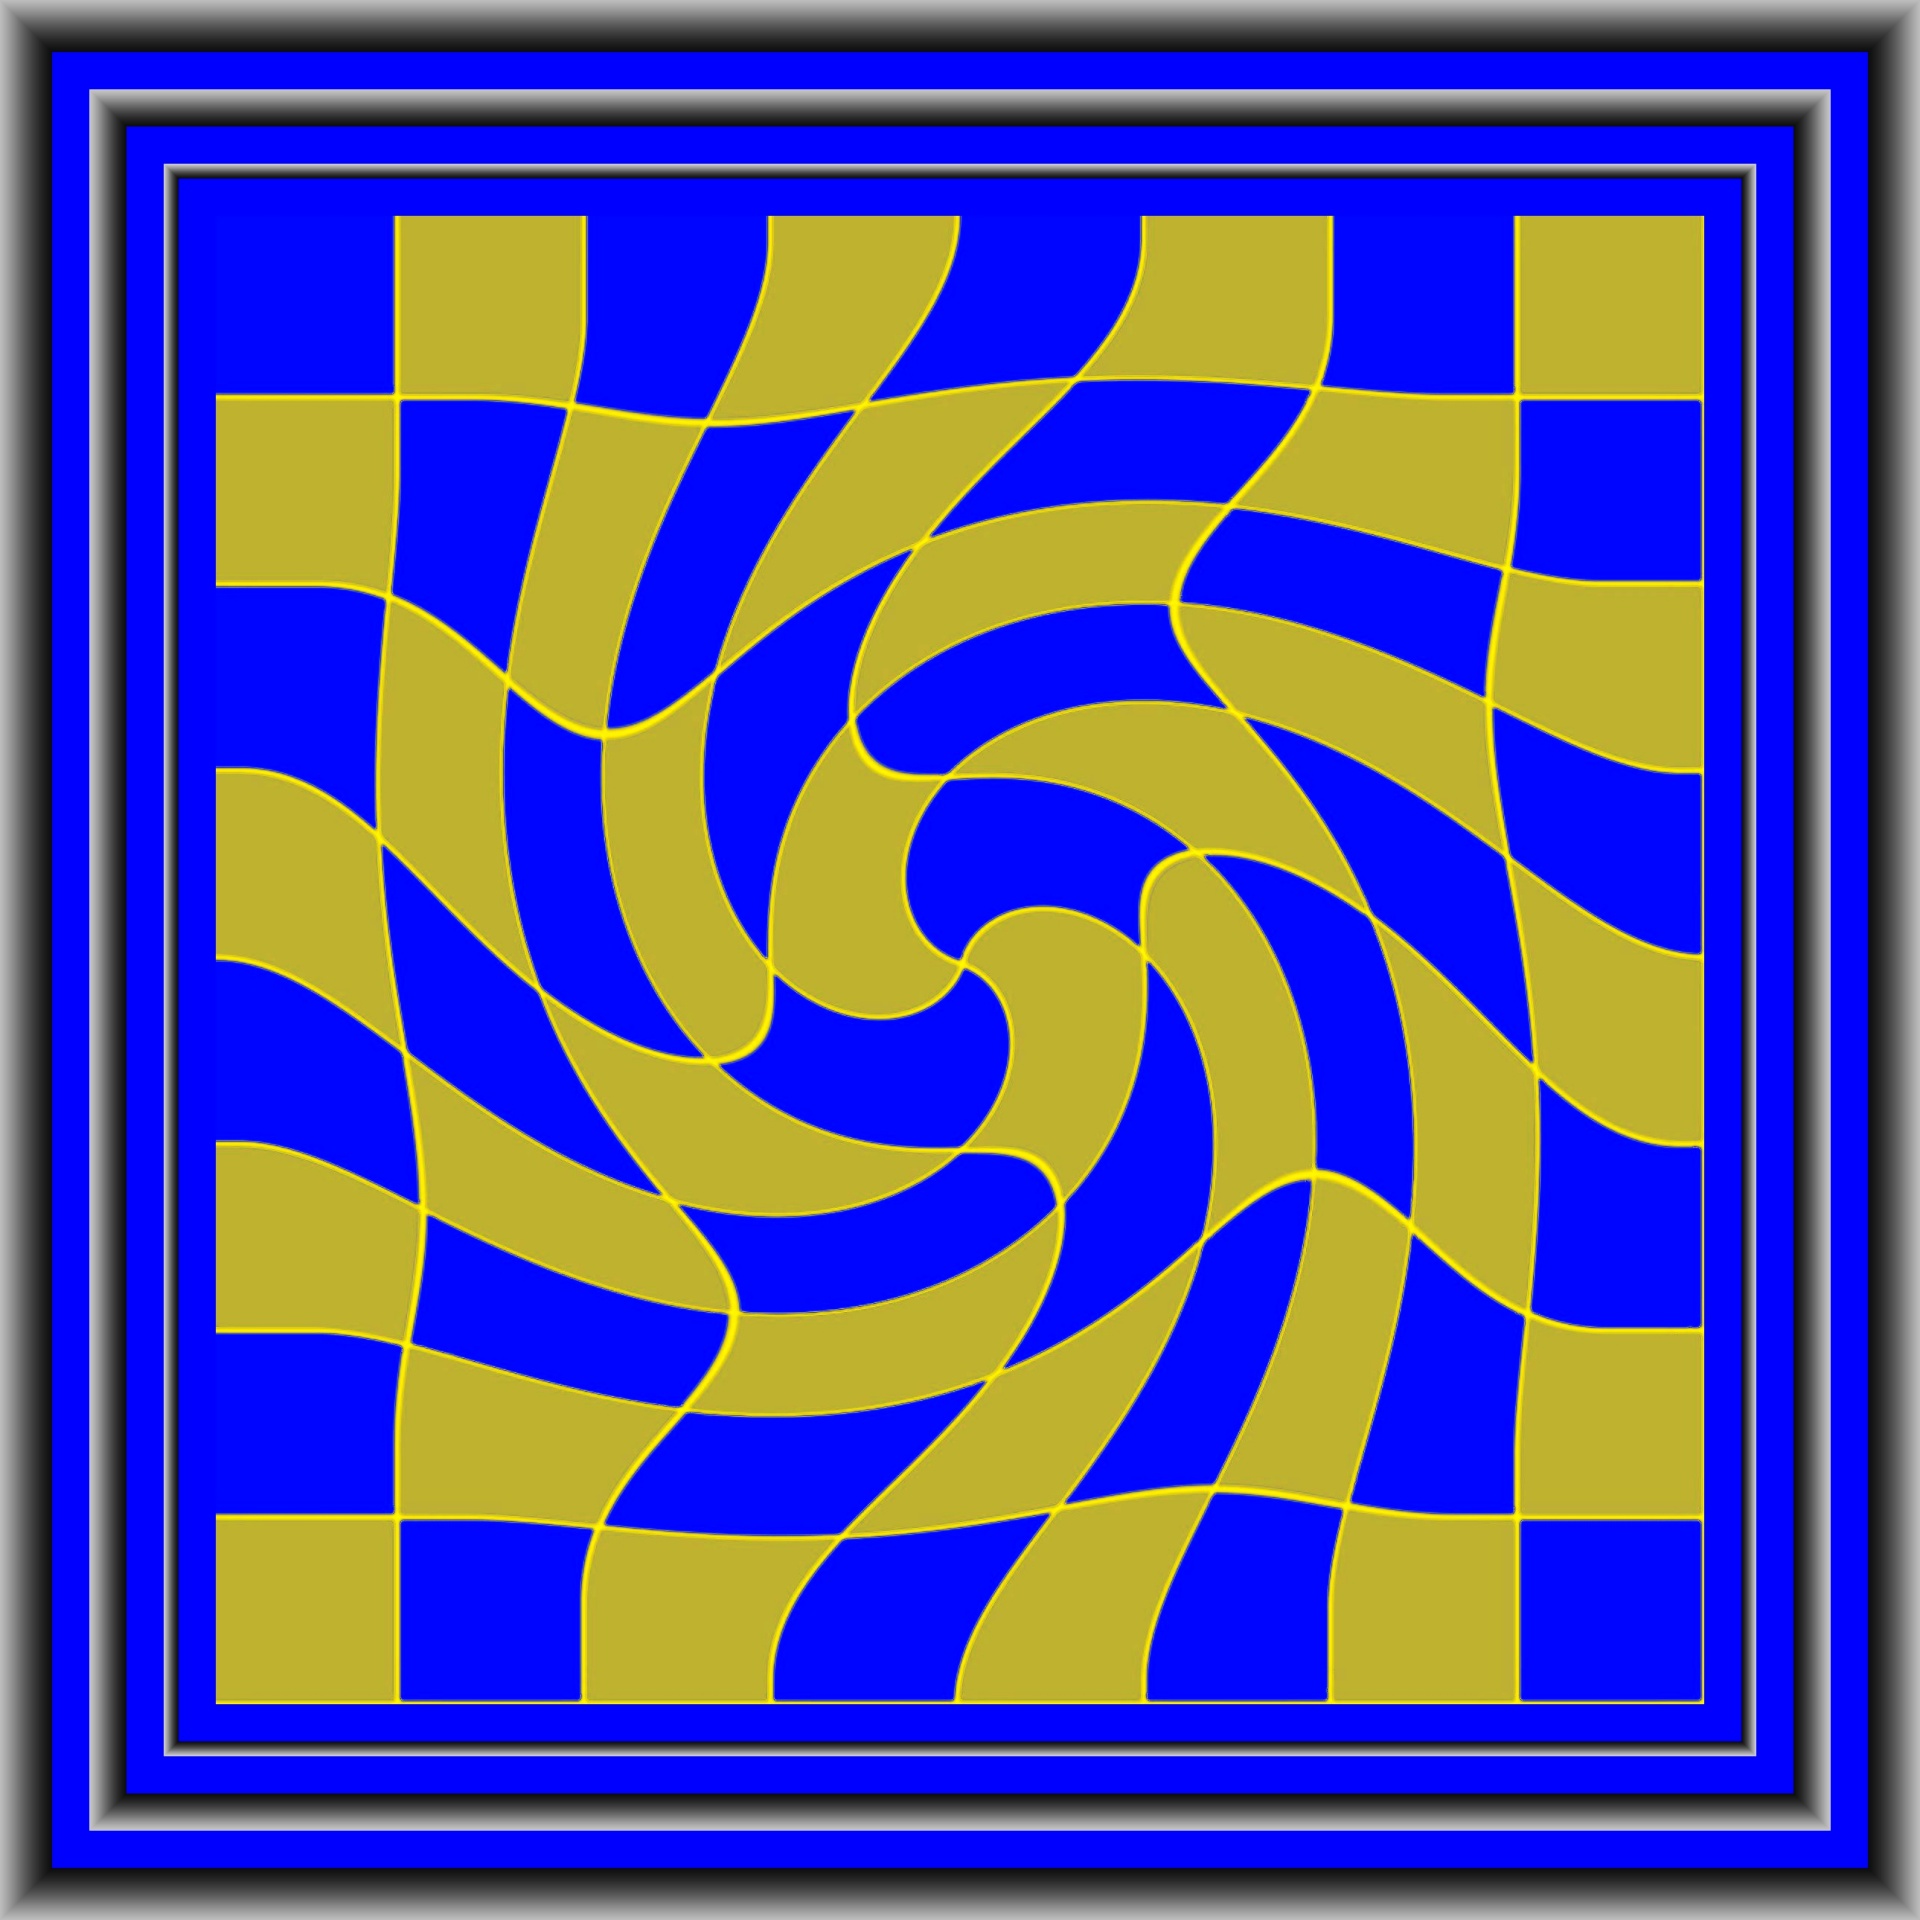 Golden Op-Art Spiral On A Blue